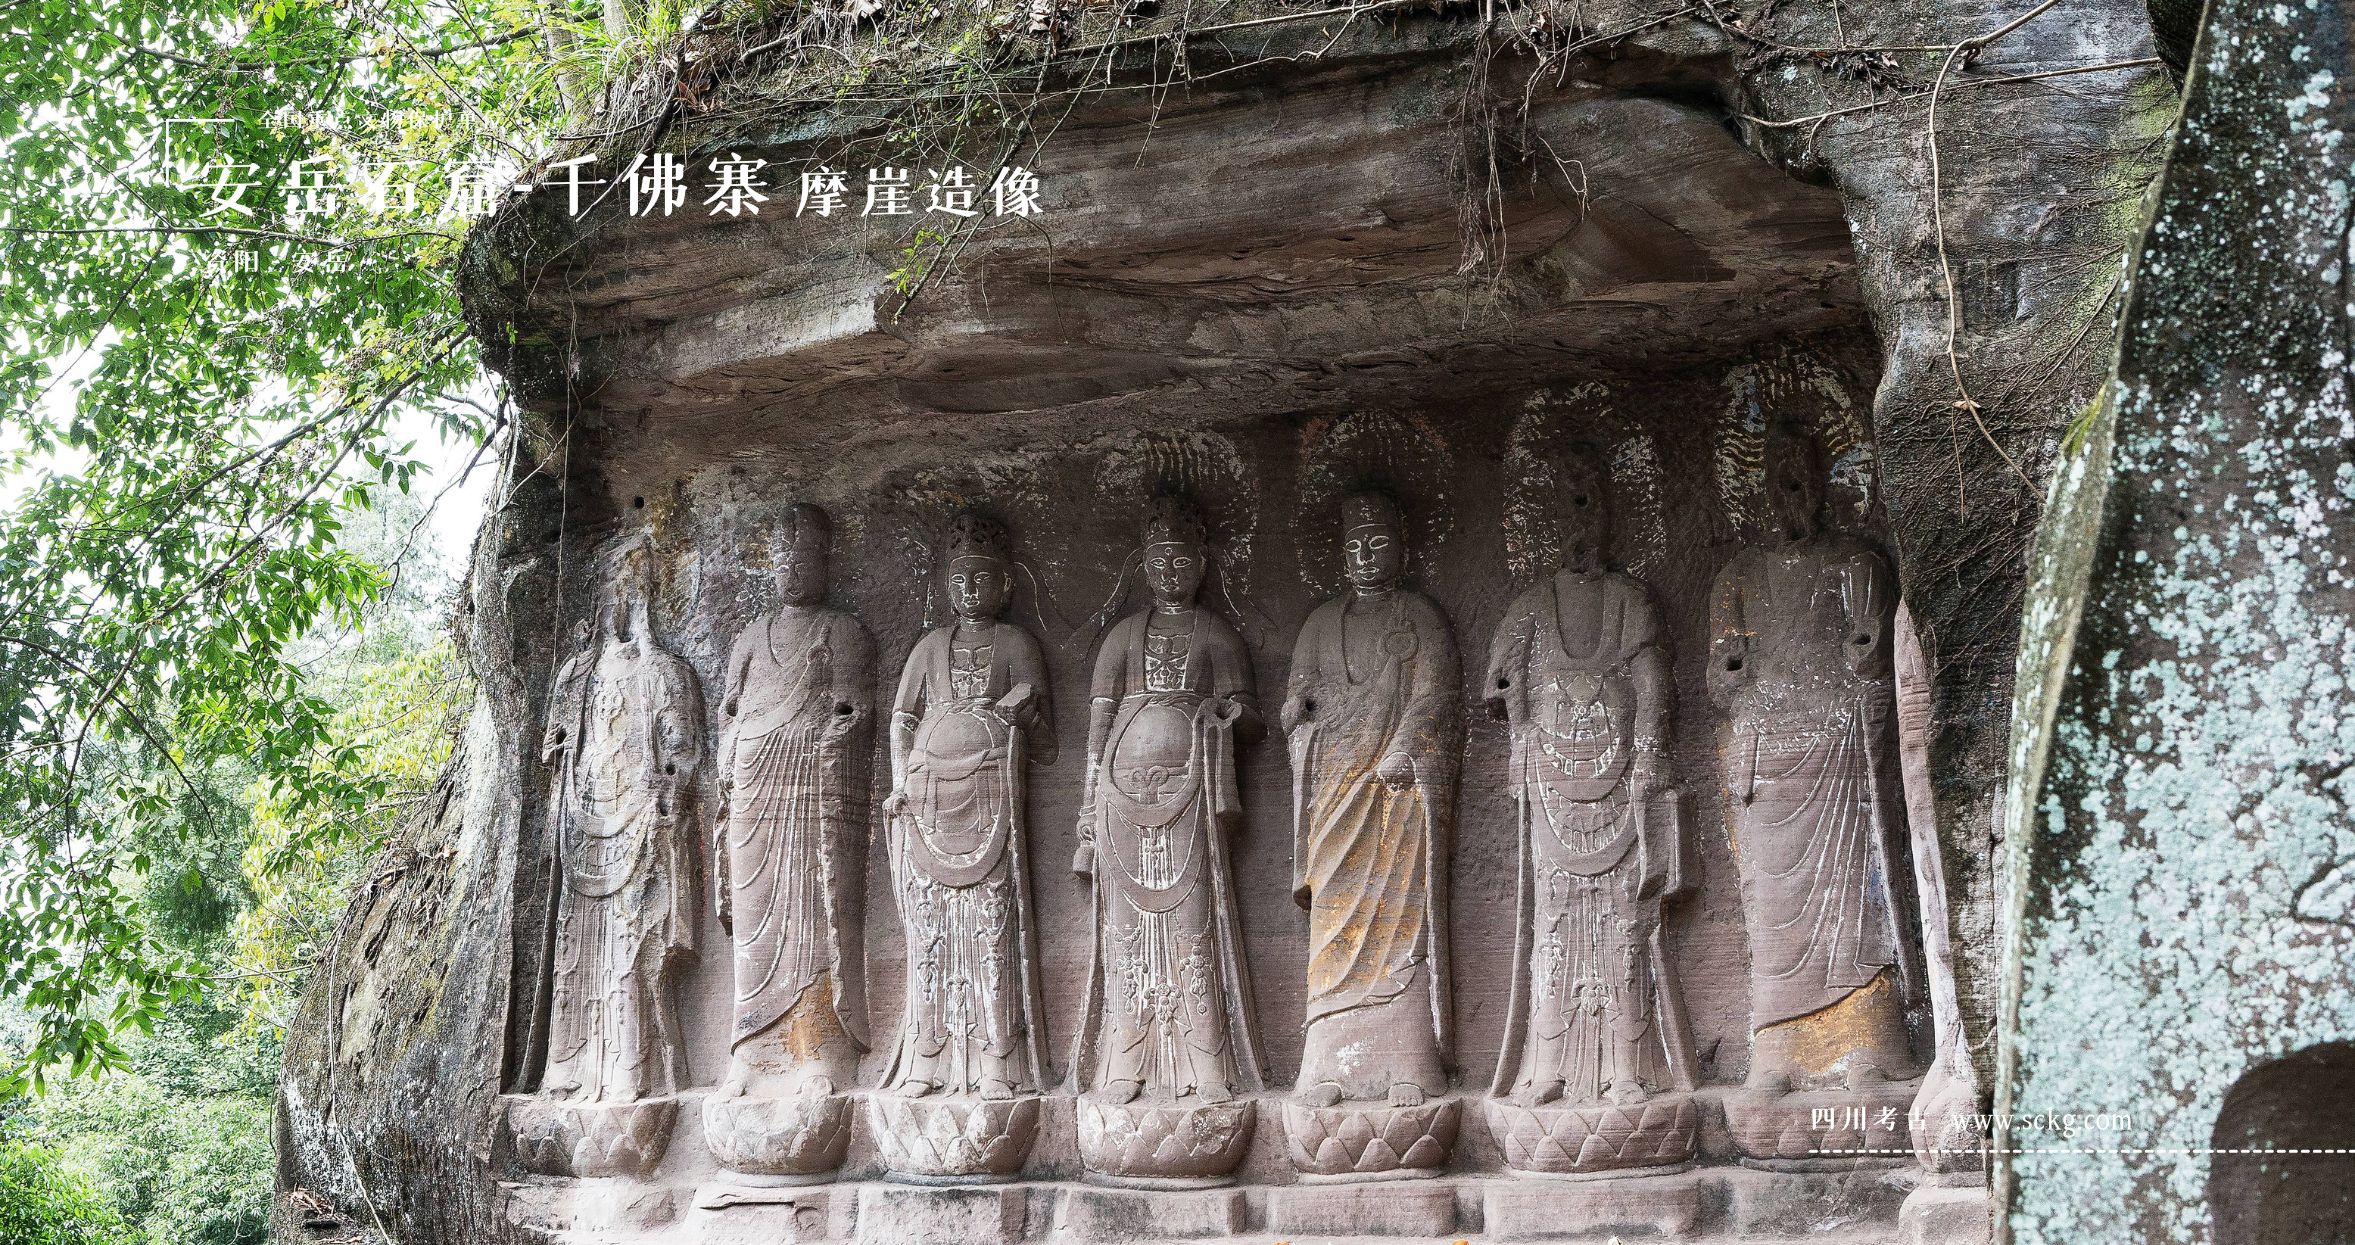 安岳石窟-千佛寨摩崖造像-第30龛菩萨造像